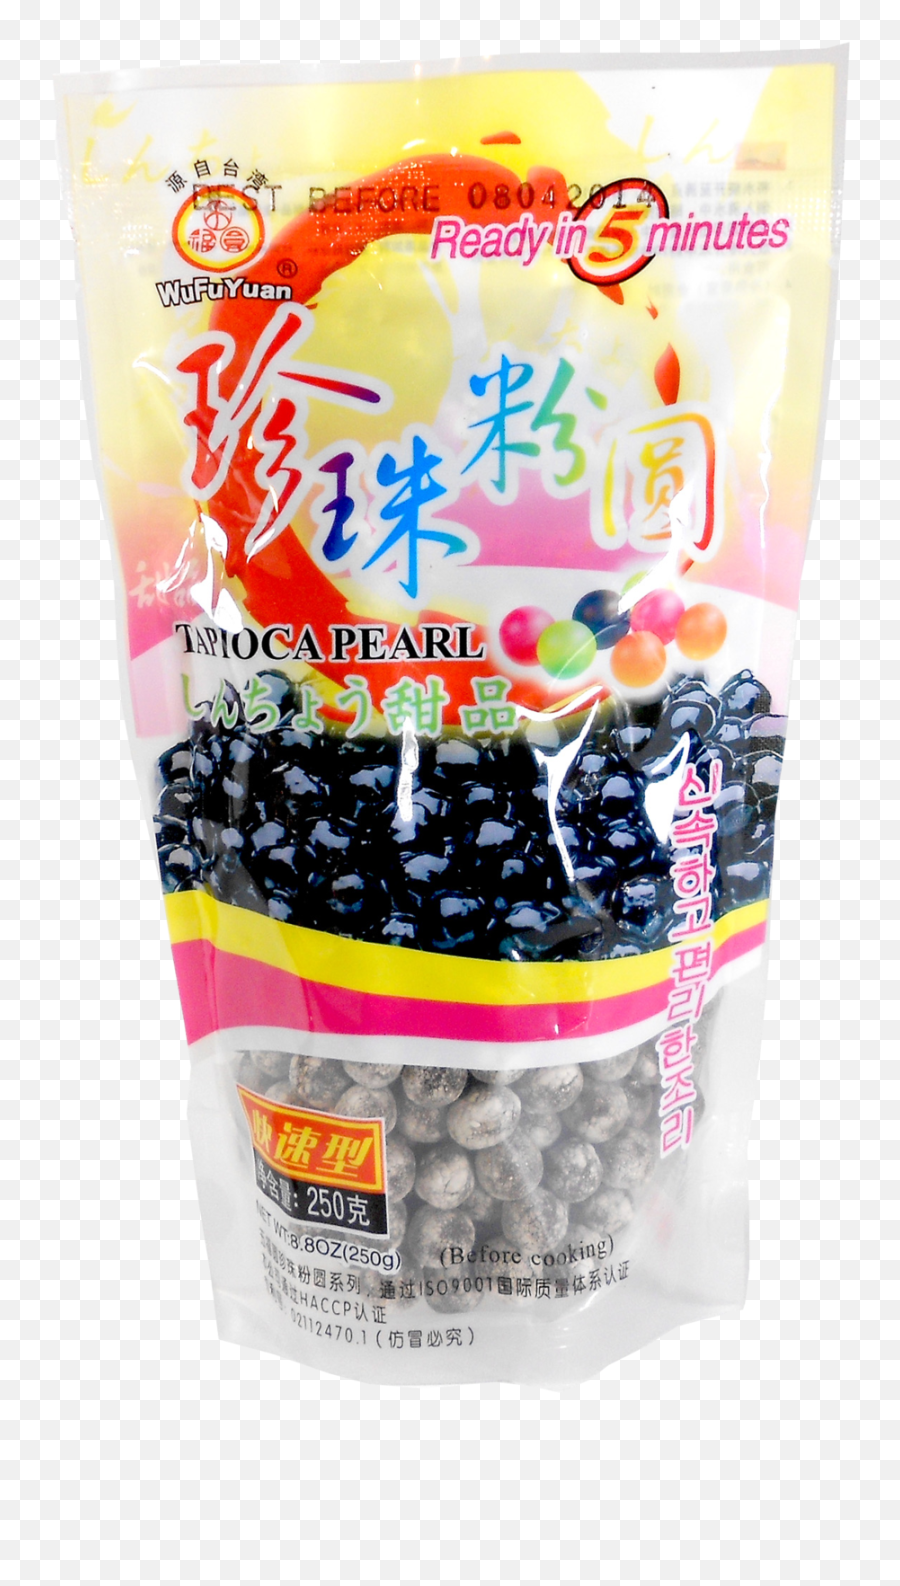 Boba Png - Wufuyuan Black Tapioca Pearl,Boba Png